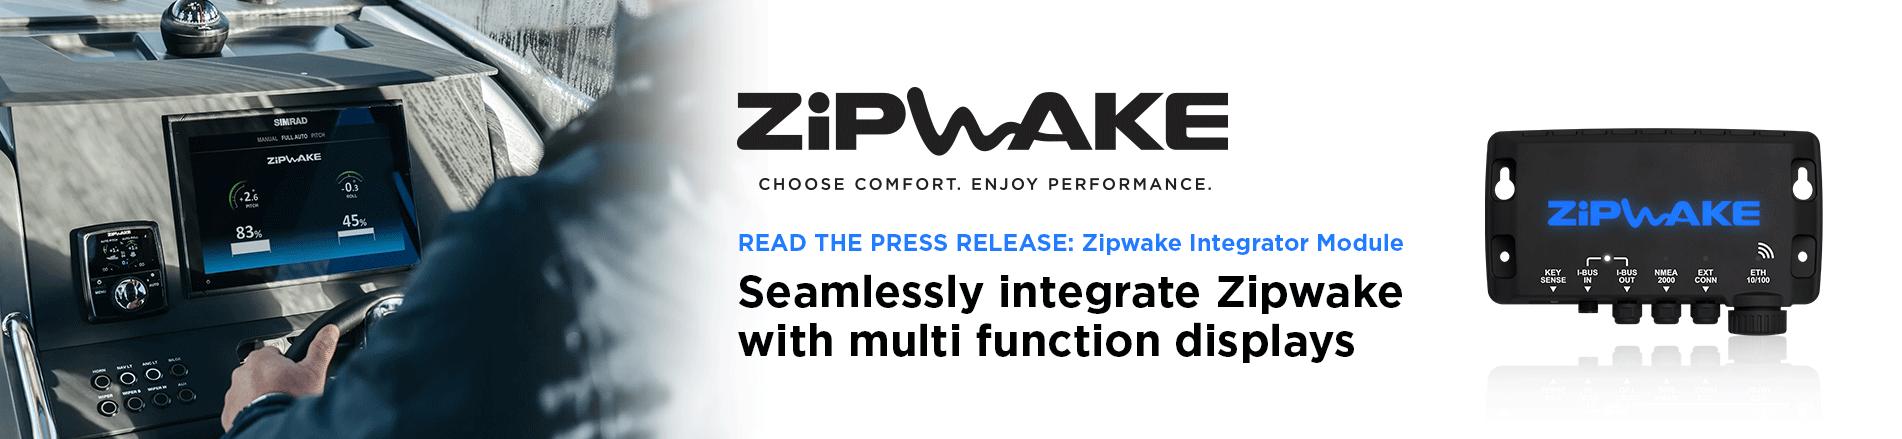 Zipwake multifunctional integrator module slider